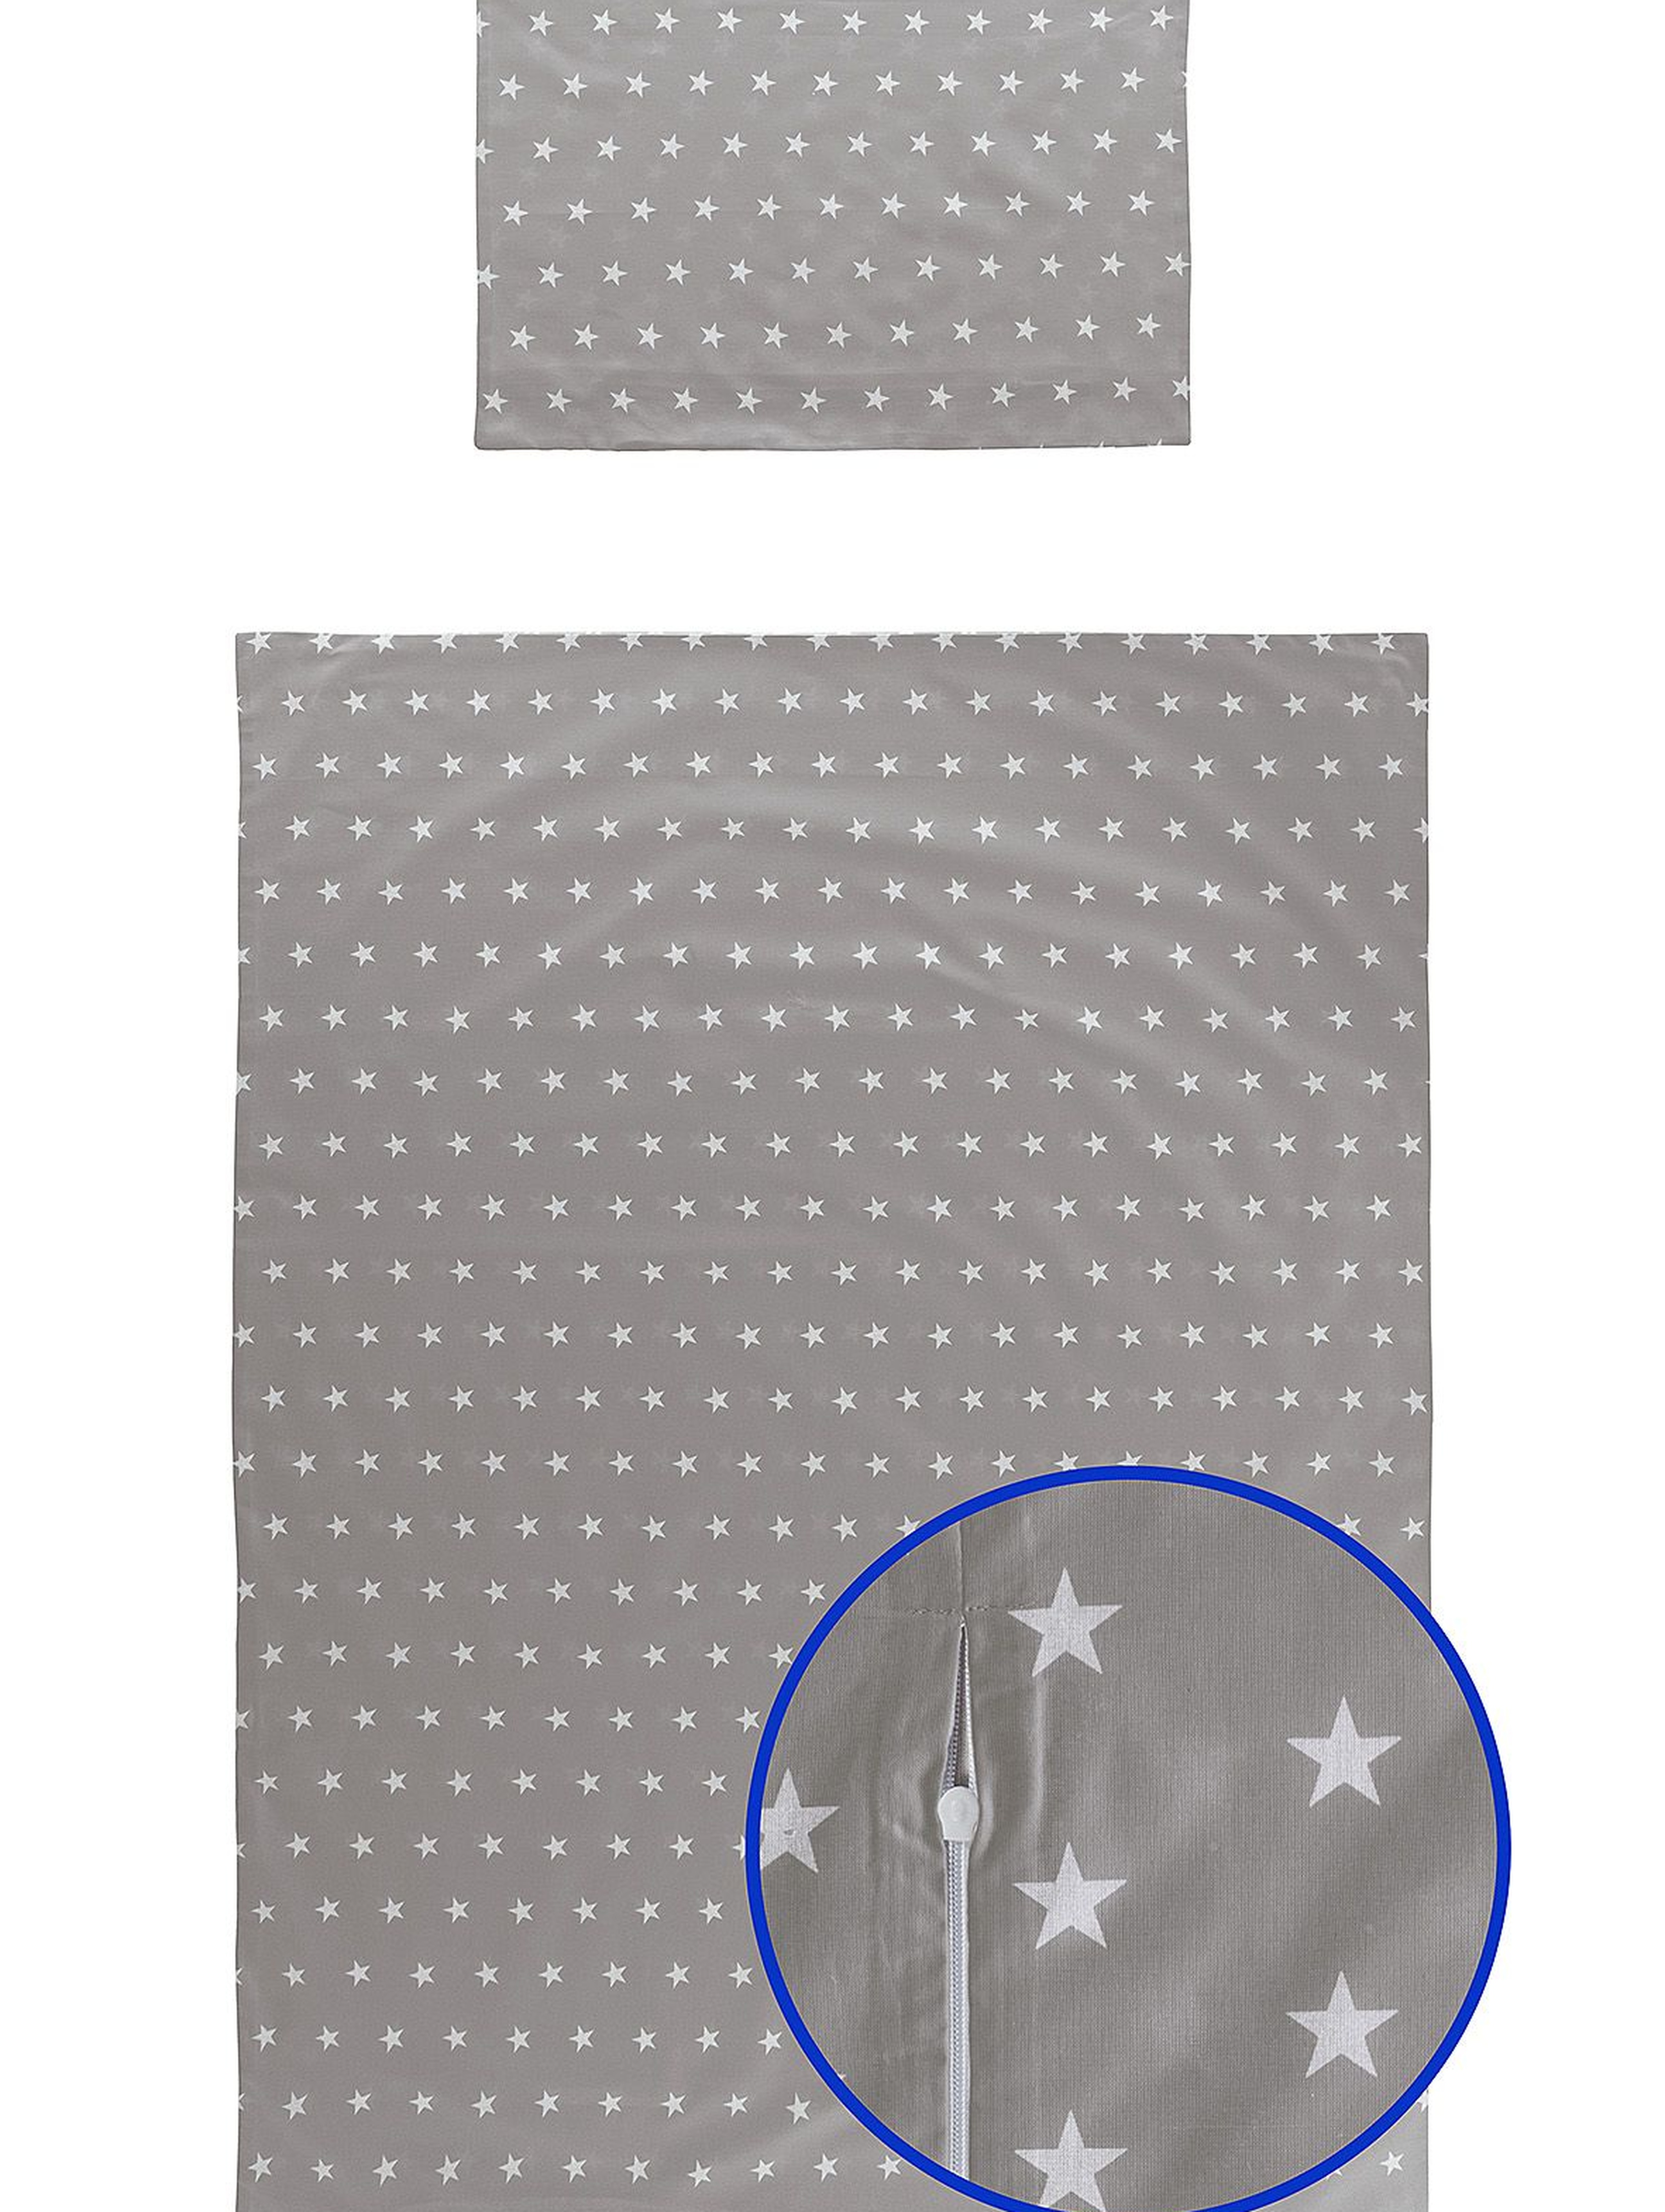 Pościel bawełniana dla dziecka 135x100cm- szara w gwiazdki